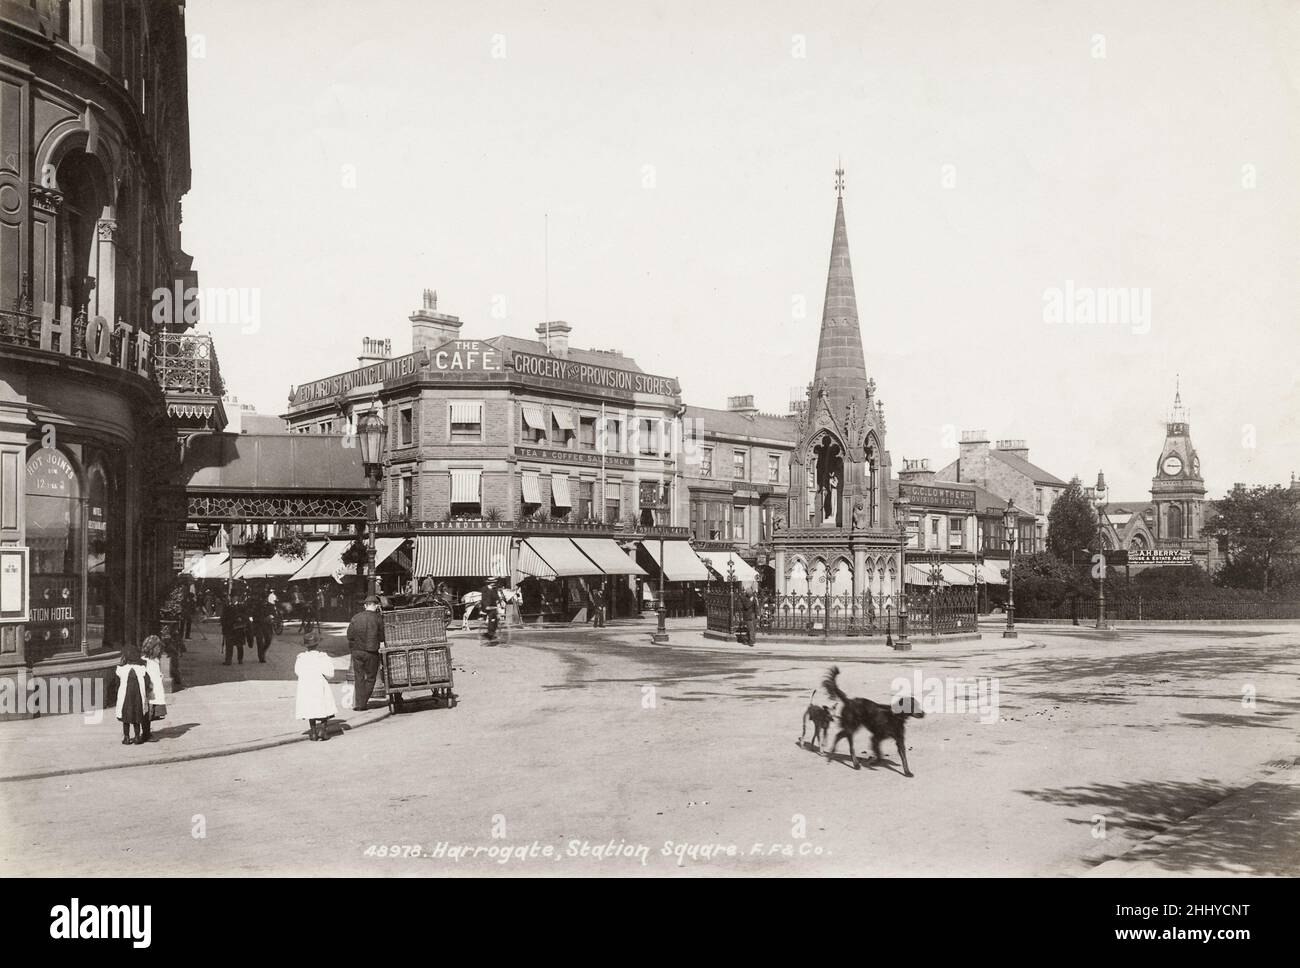 Fotografía vintage, finales de 19th, principios del siglo 20th, vista de Station Square, Harrogate, North Yorkshire Foto de stock